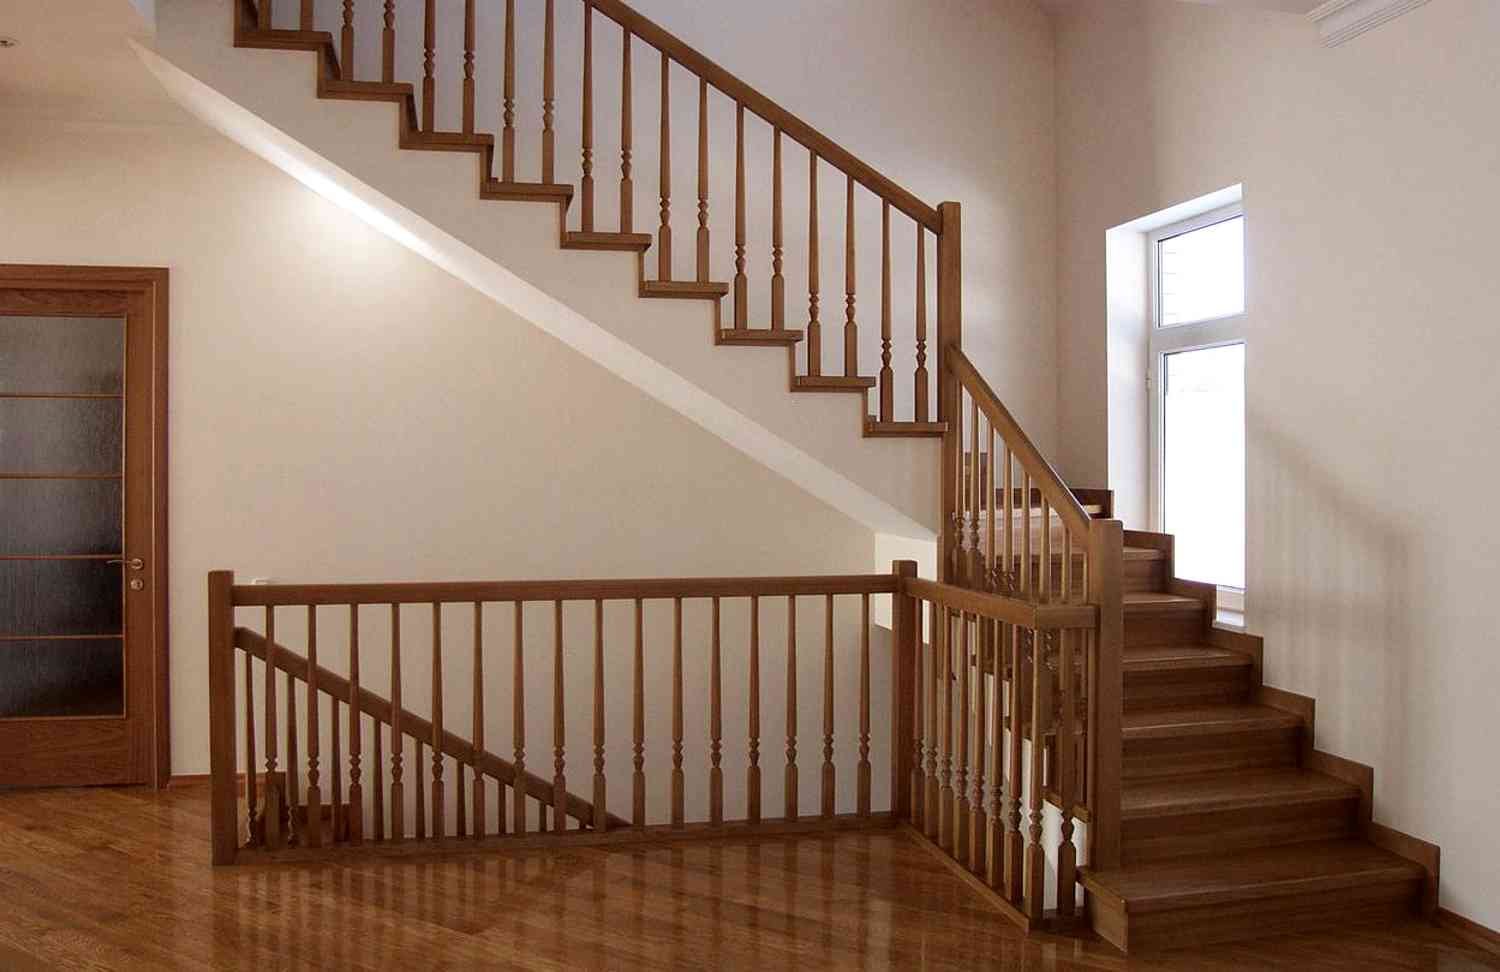 Лестницы в частном доме фото дерево. Лестница в частном доме. Деревянная лестница. Лестница межэтажная деревянная. Межэтажные лестницы в частном доме деревянные.